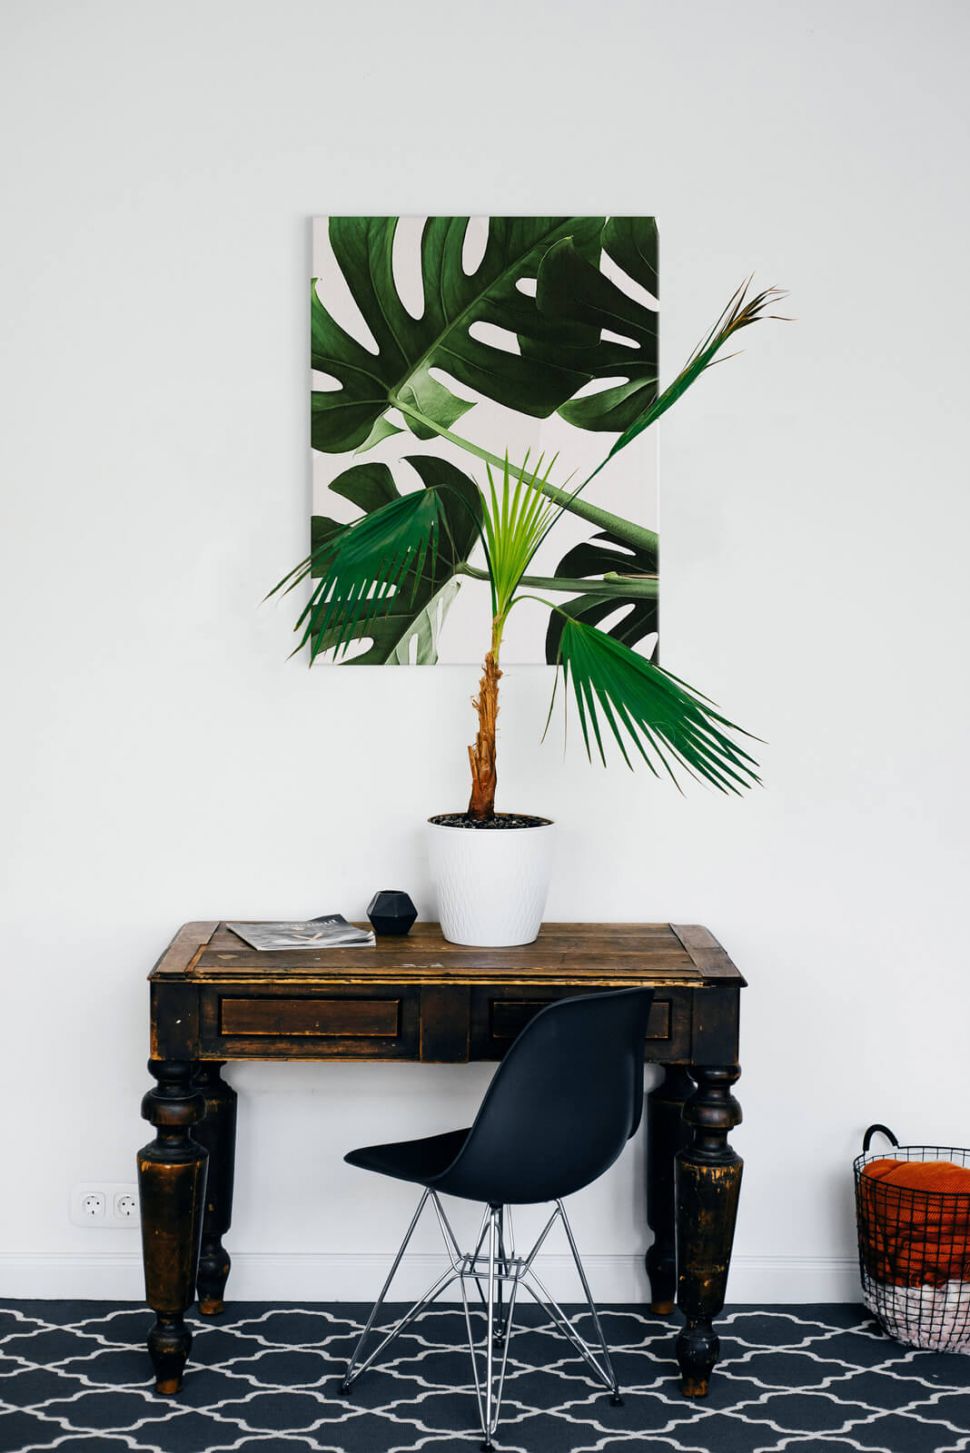 Obraz płócienny Egzotyczne liście powieszony nad stolikiem na białej ścianie